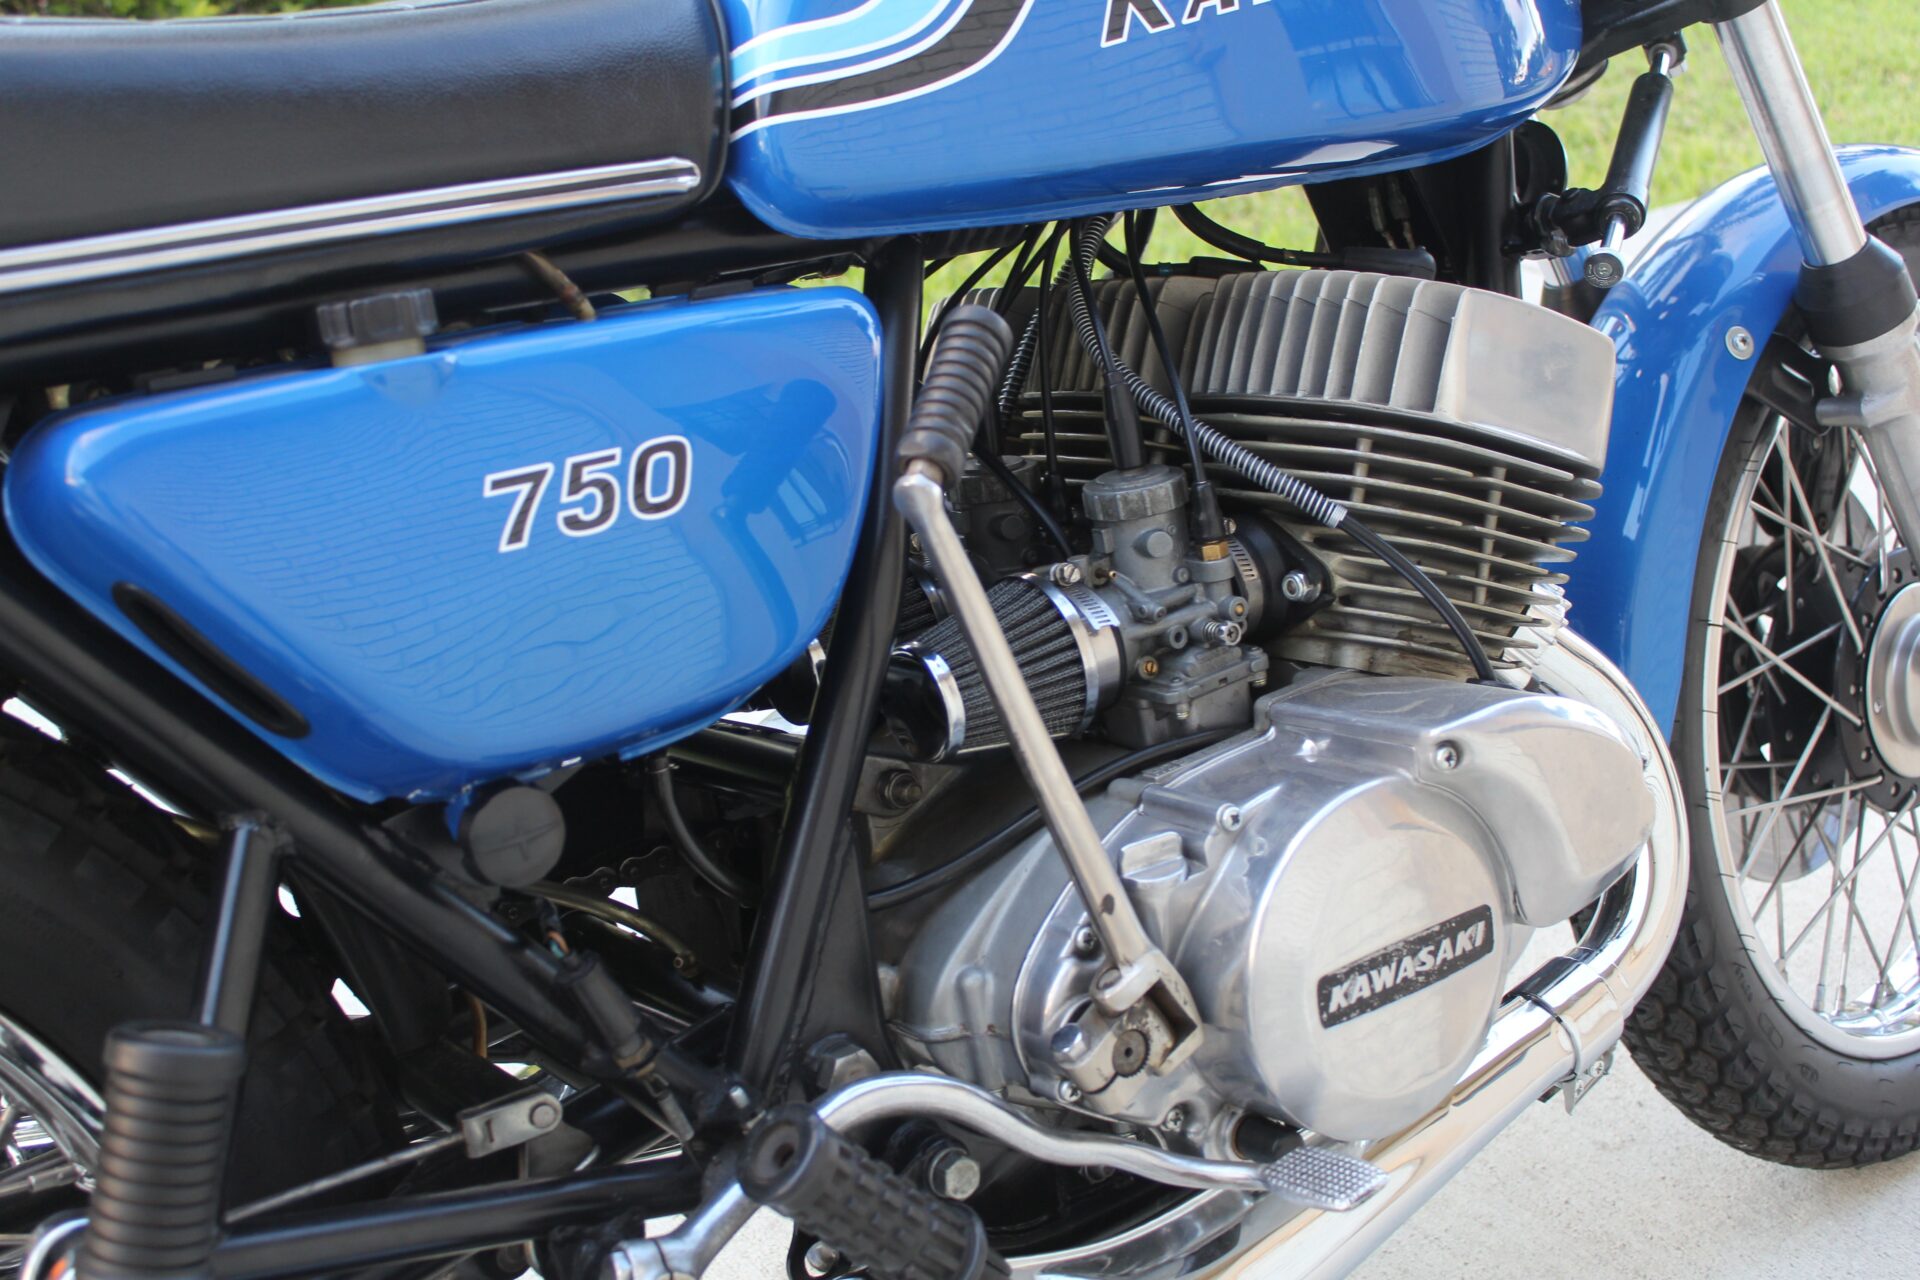 Kawasaki 750 6